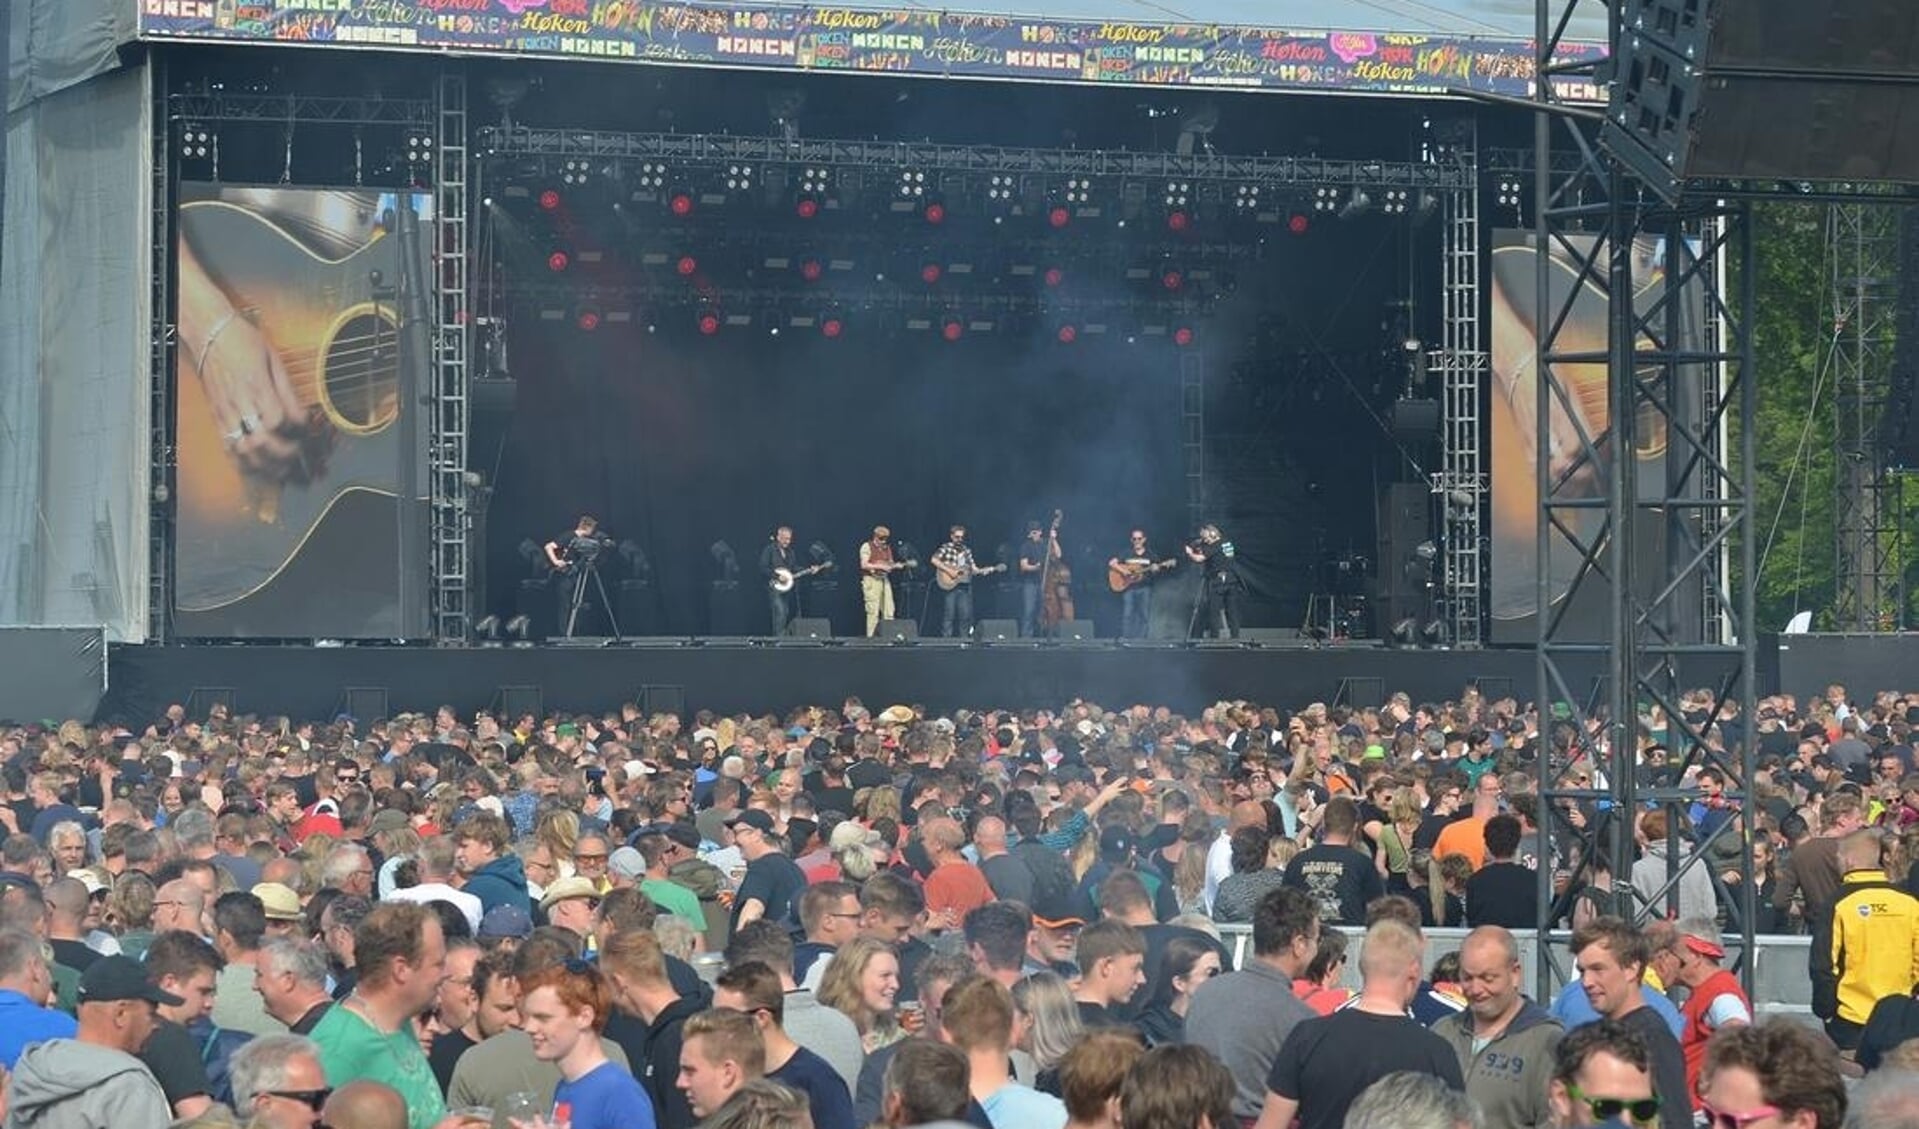 Vele trouwe aanhangers waren getuige van dit groots opgezette concert. Foto: Achterhoekfoto.nl/Johan Braakman